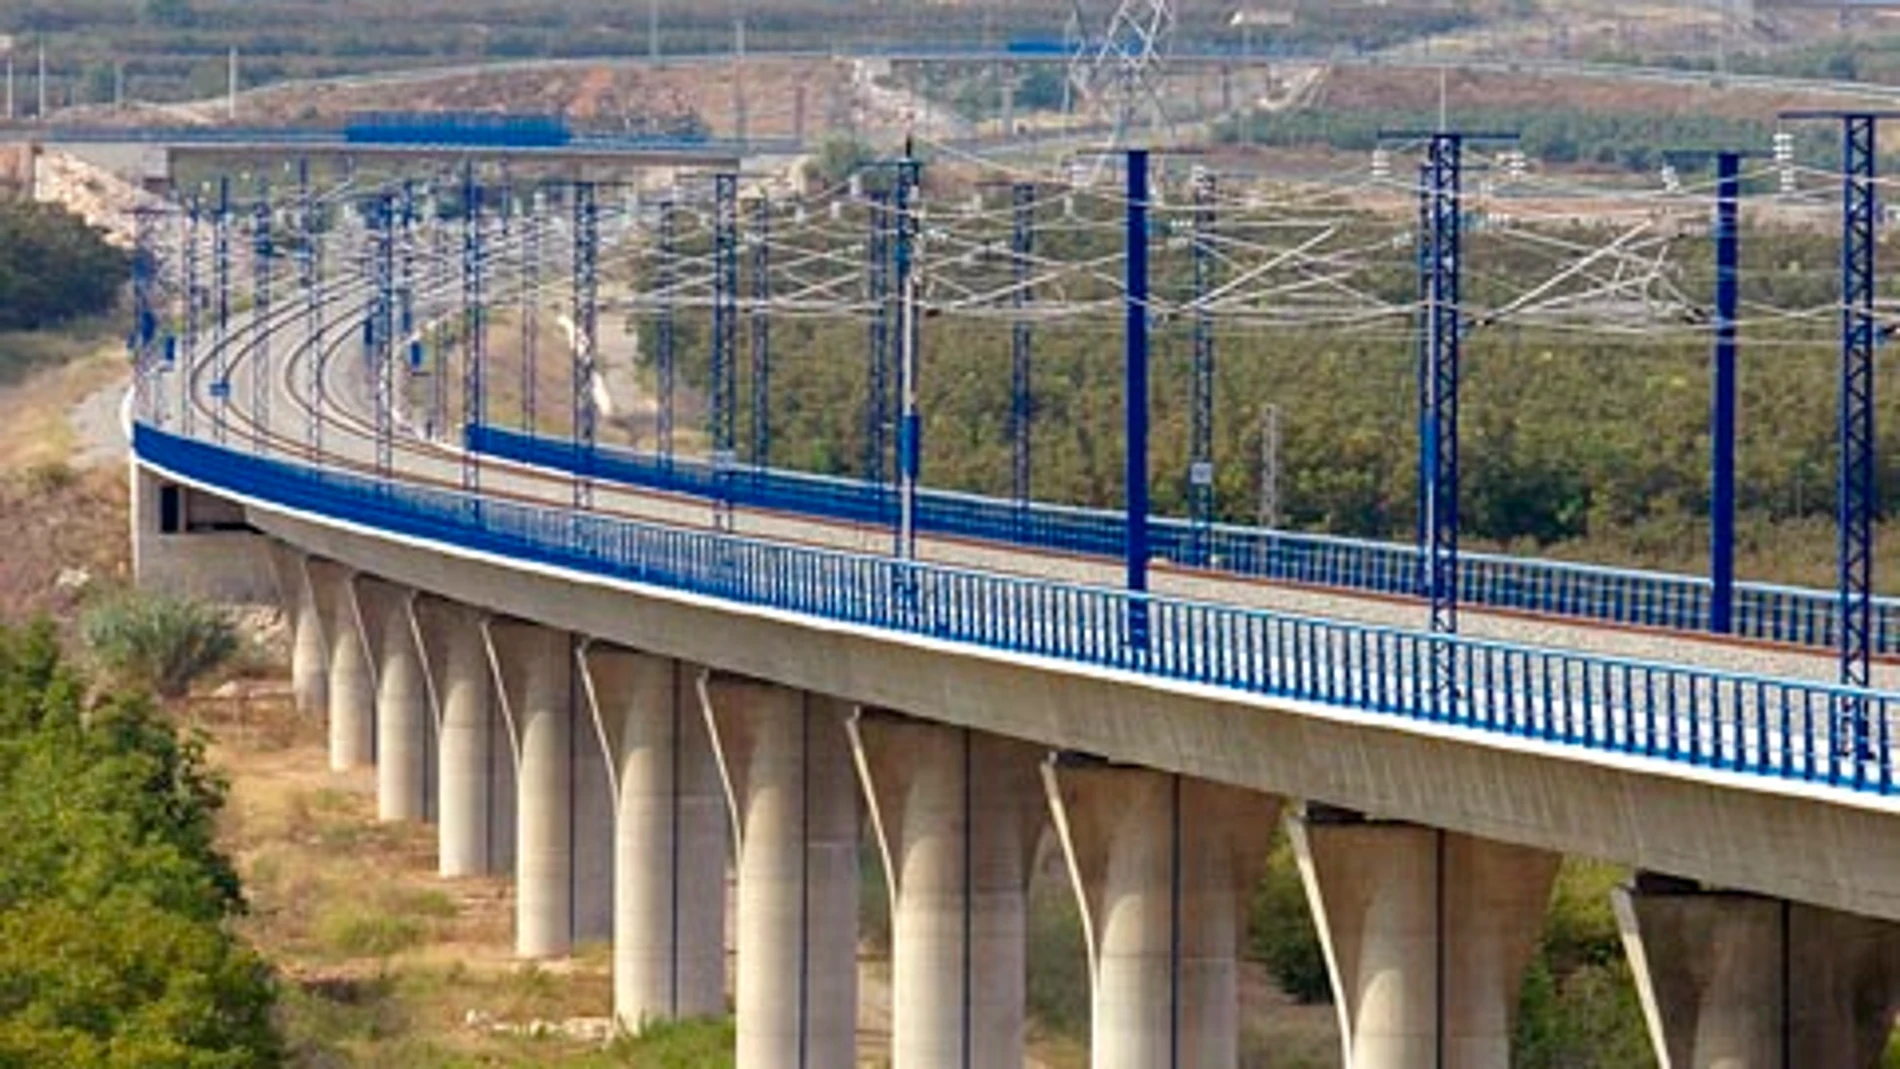 Viaducto sobre el río Francolí LAV Madrid - Barcelona - frontera francesa